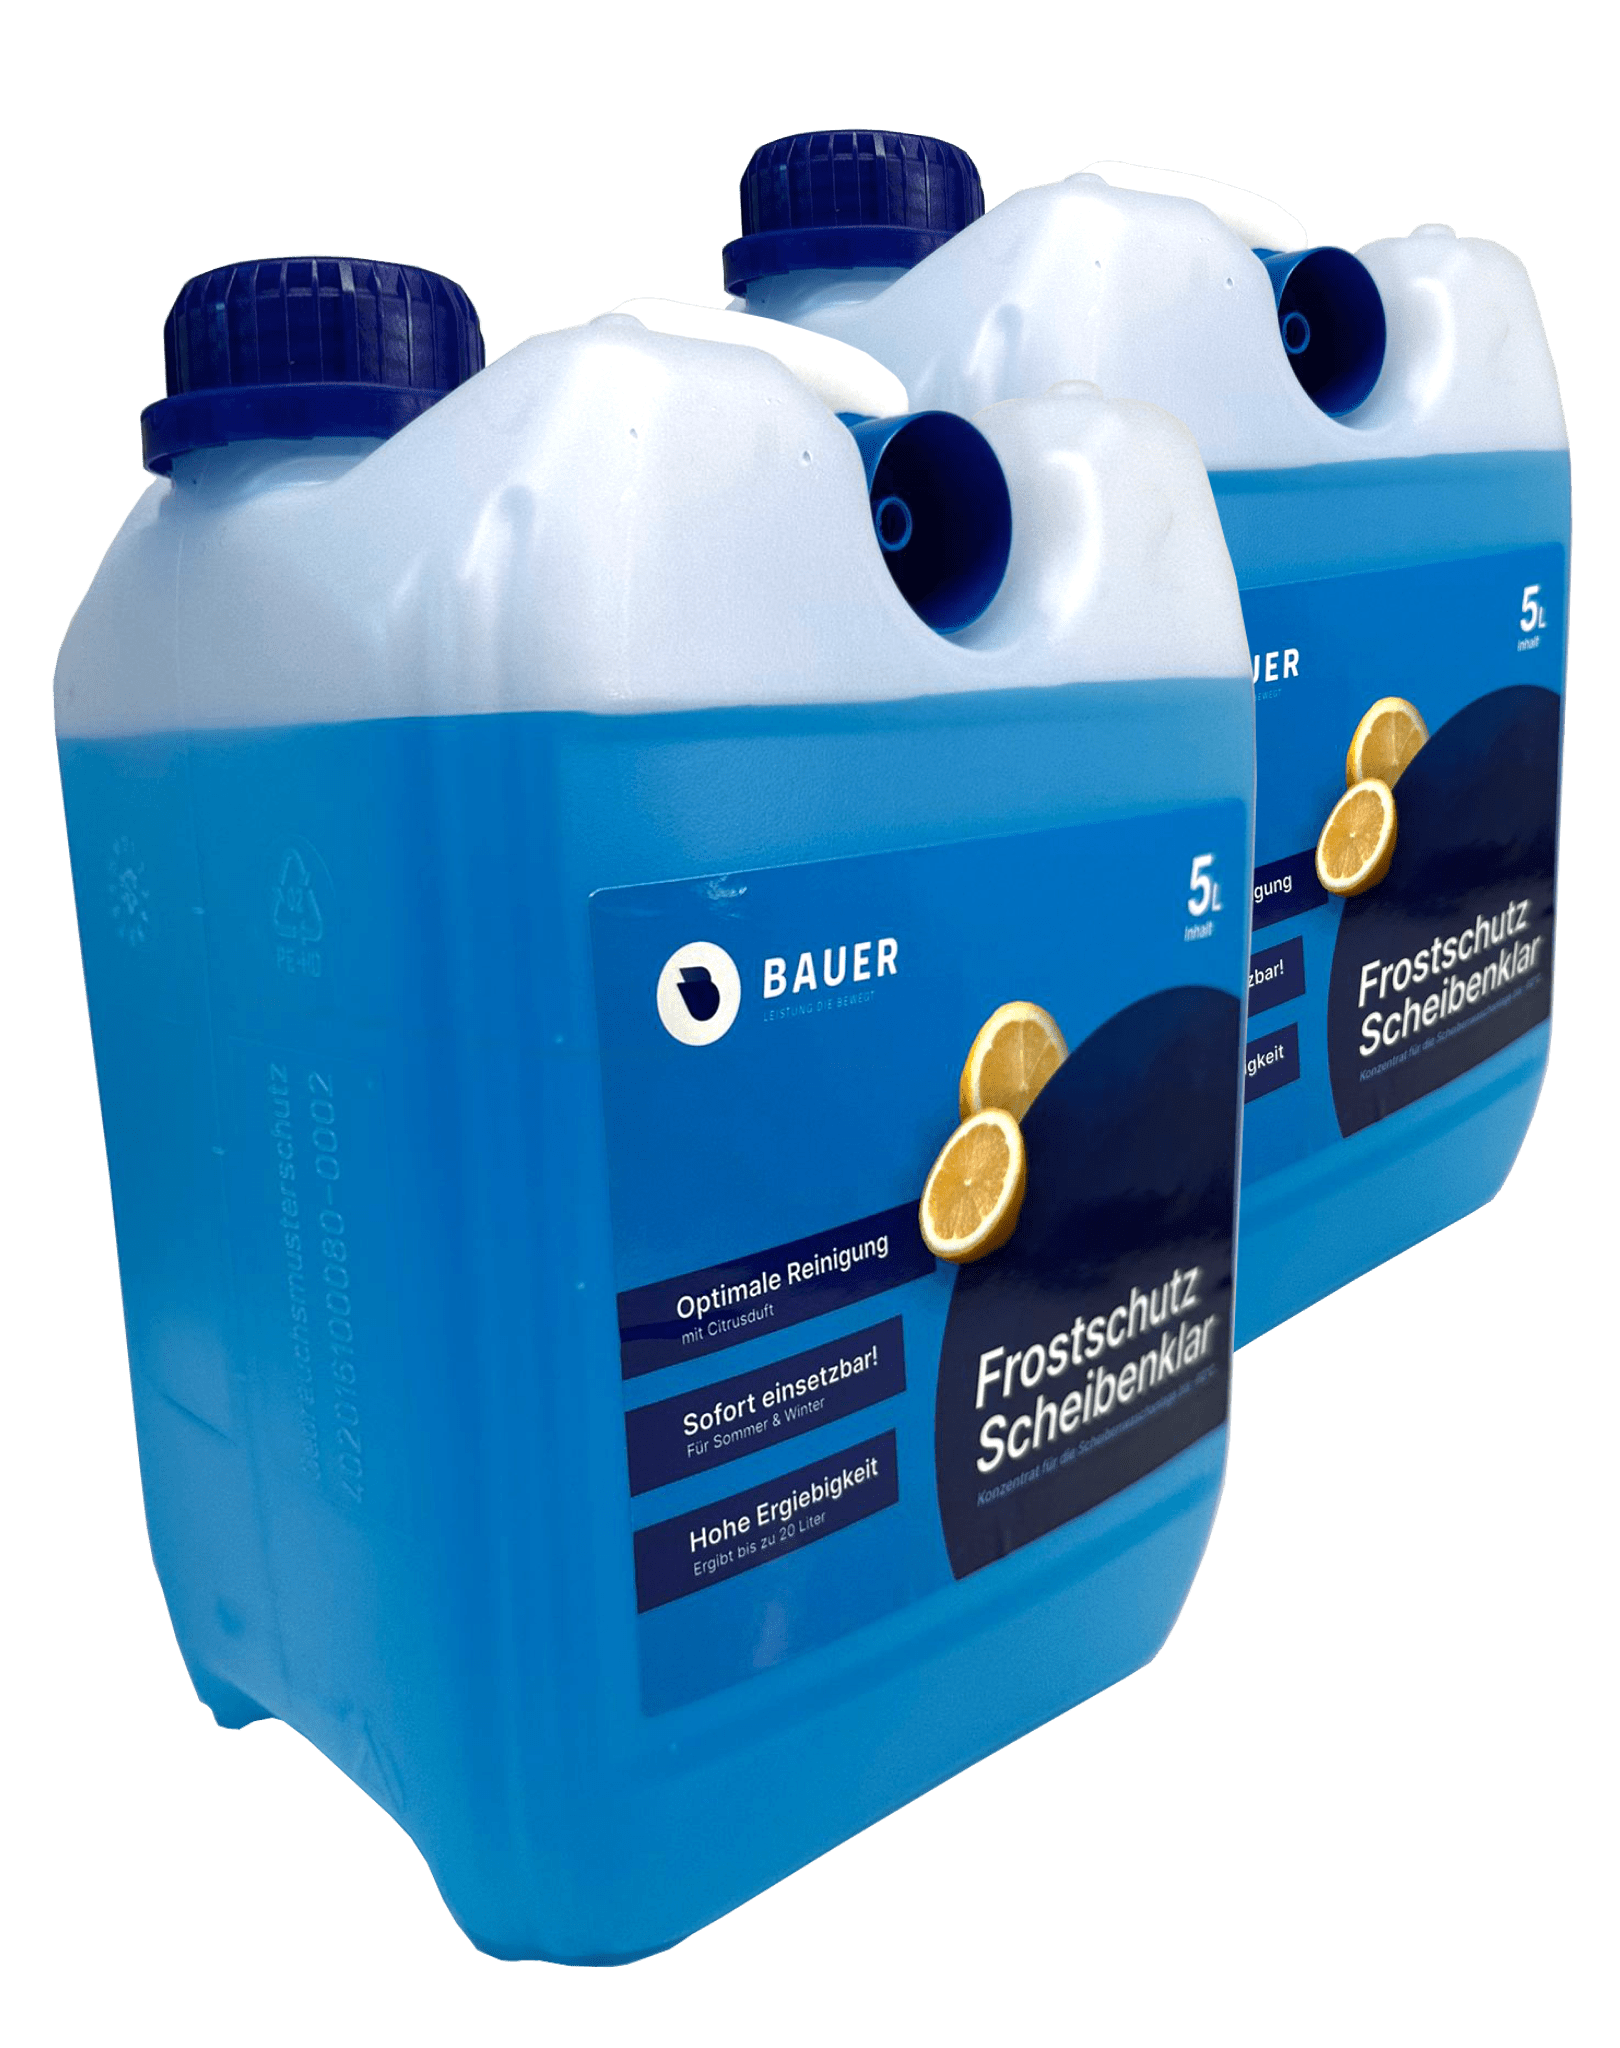 Adamol Scheibenfrostschutz Konzentrat 5 Liter, Winterscheibenreiniger